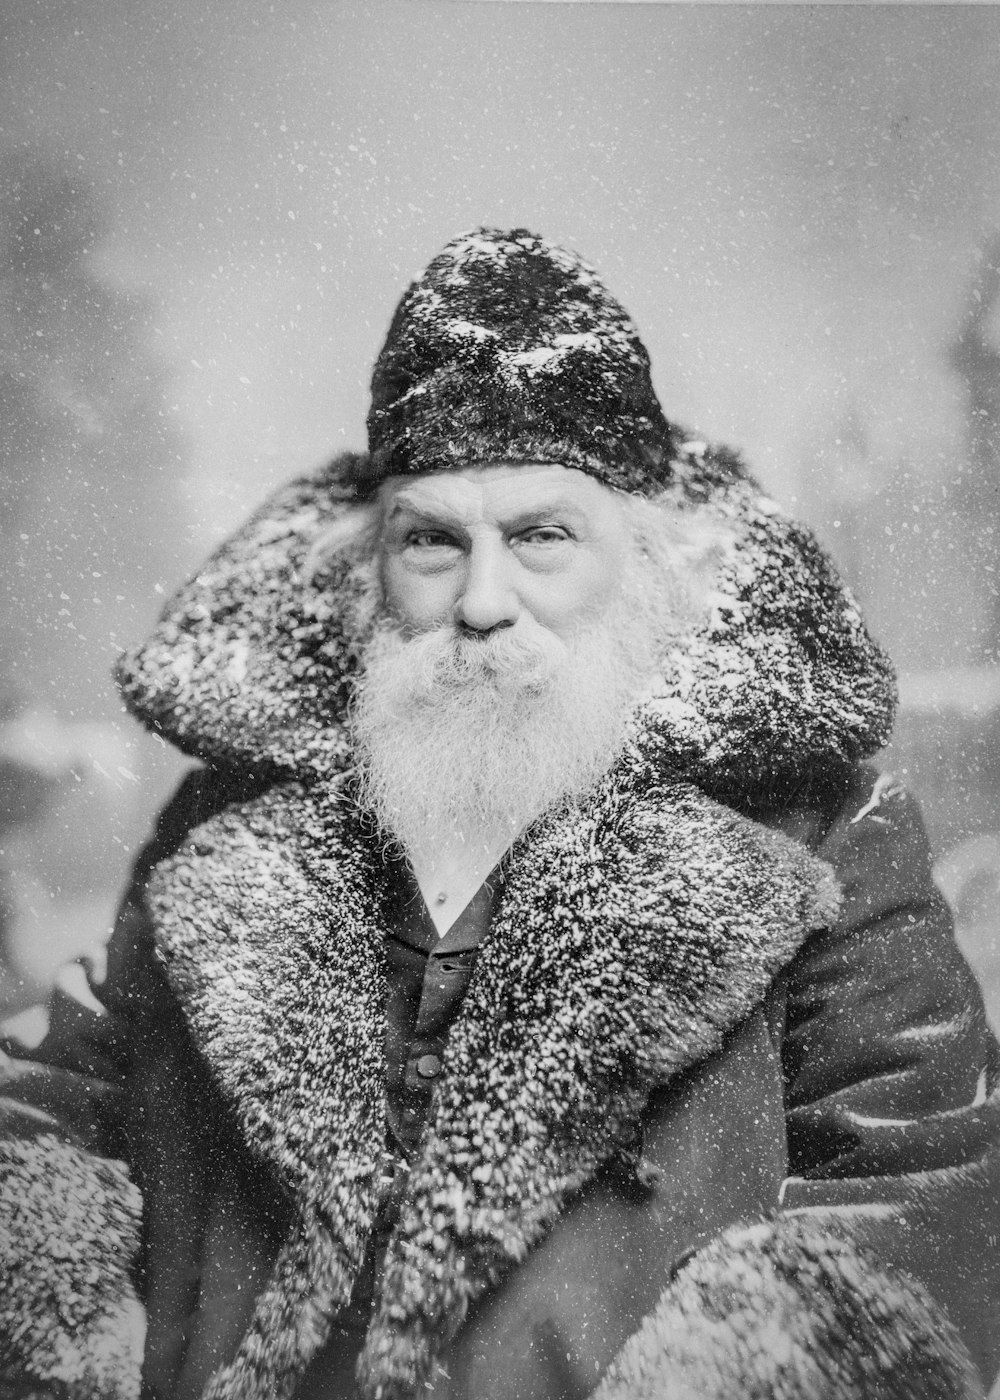 모피 코트를 입은 남자의 오래된 사진